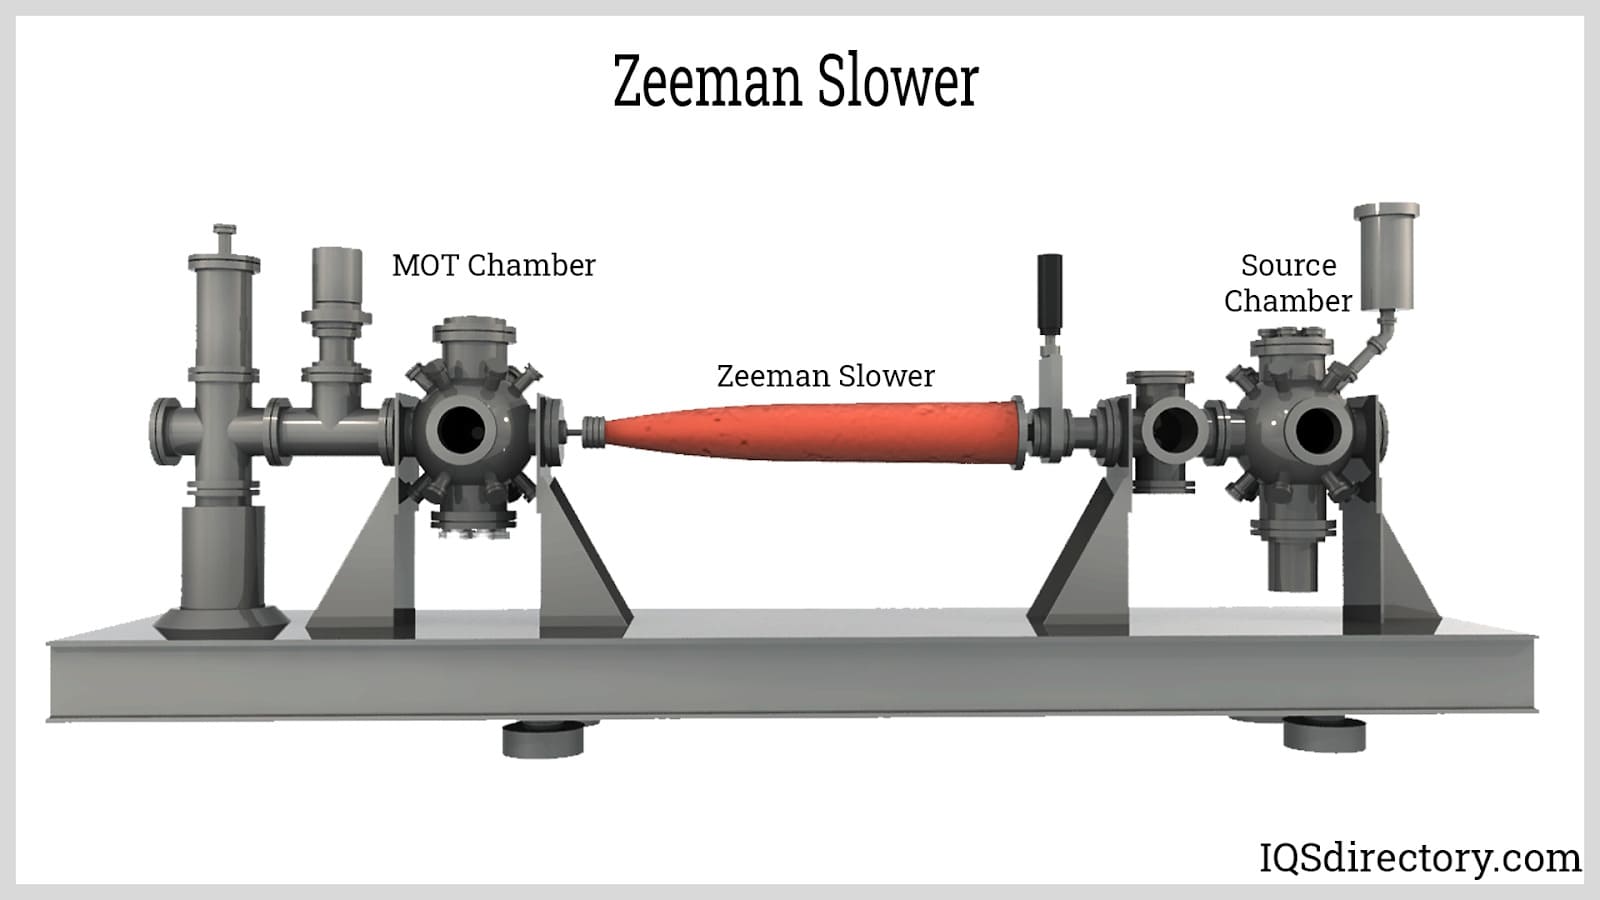 Zeeman Slower